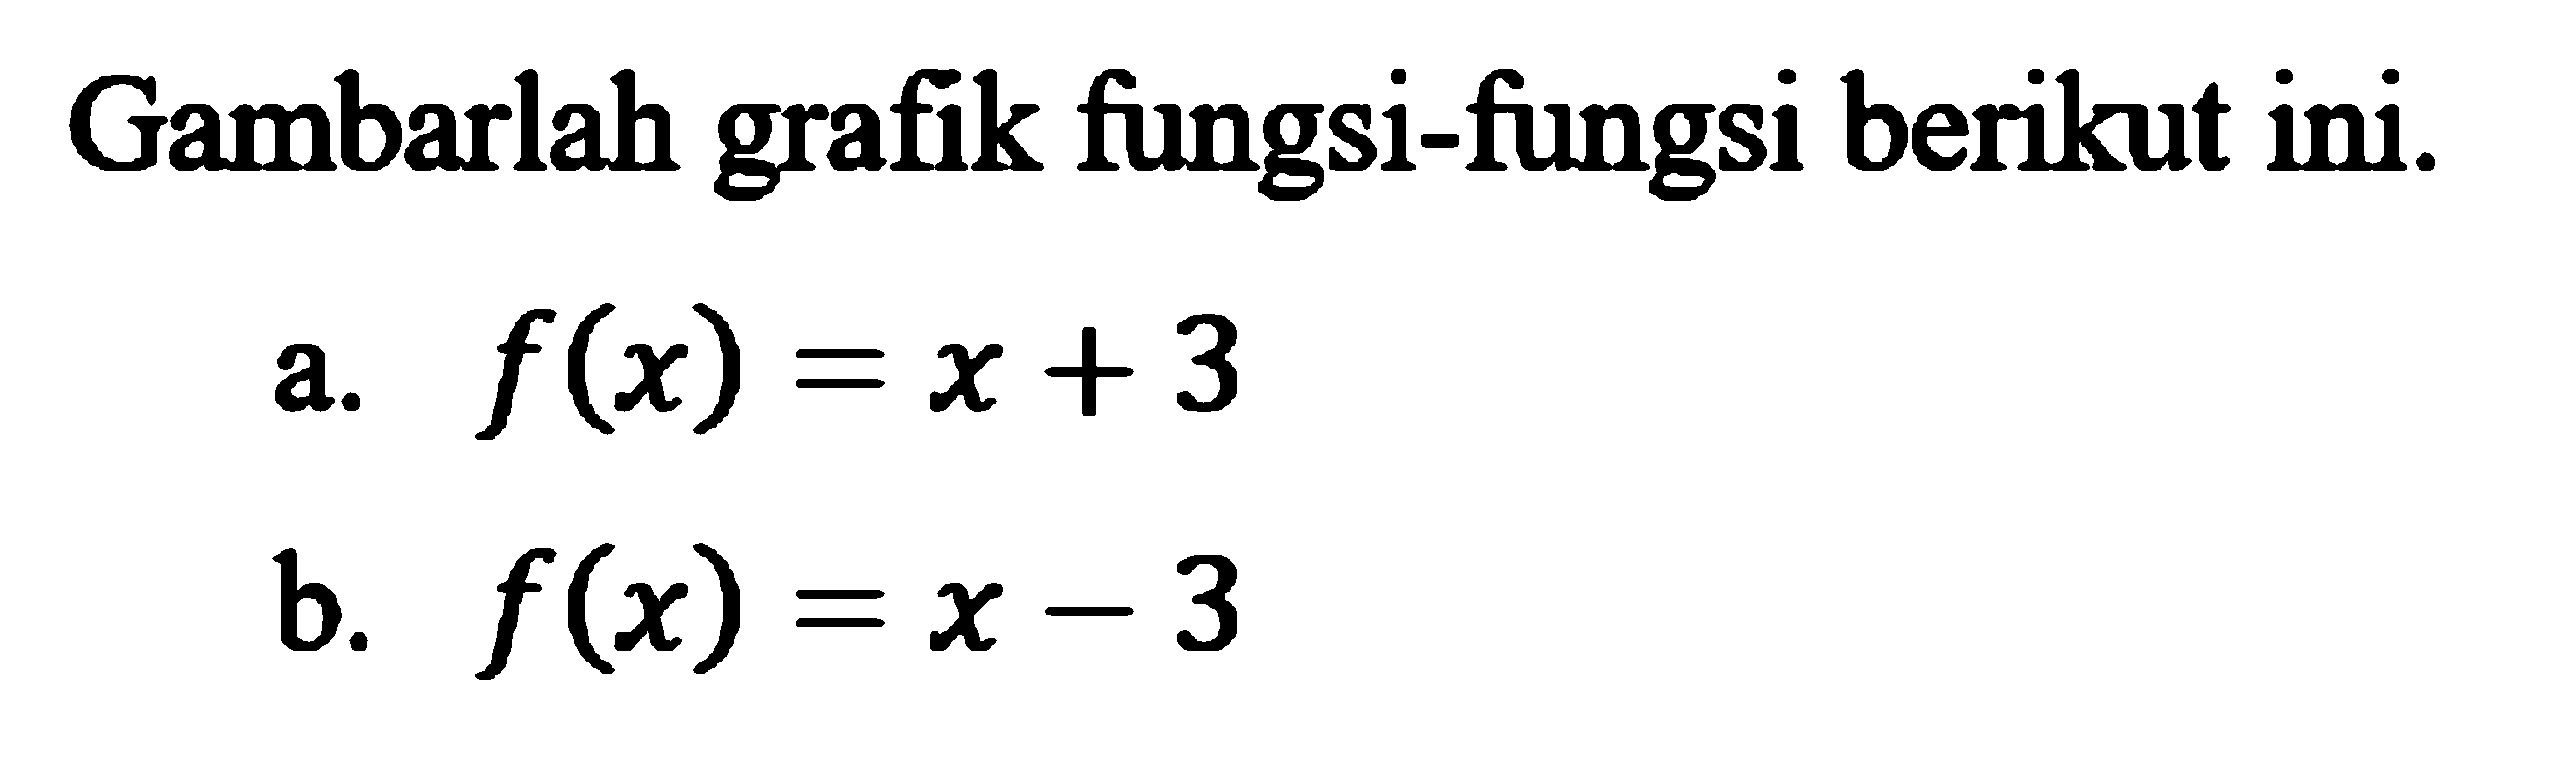 Gambarlah grafik fungsi-fungsi berikut ini. a. f(x) =  x + 3 b. f(x) = x - 3